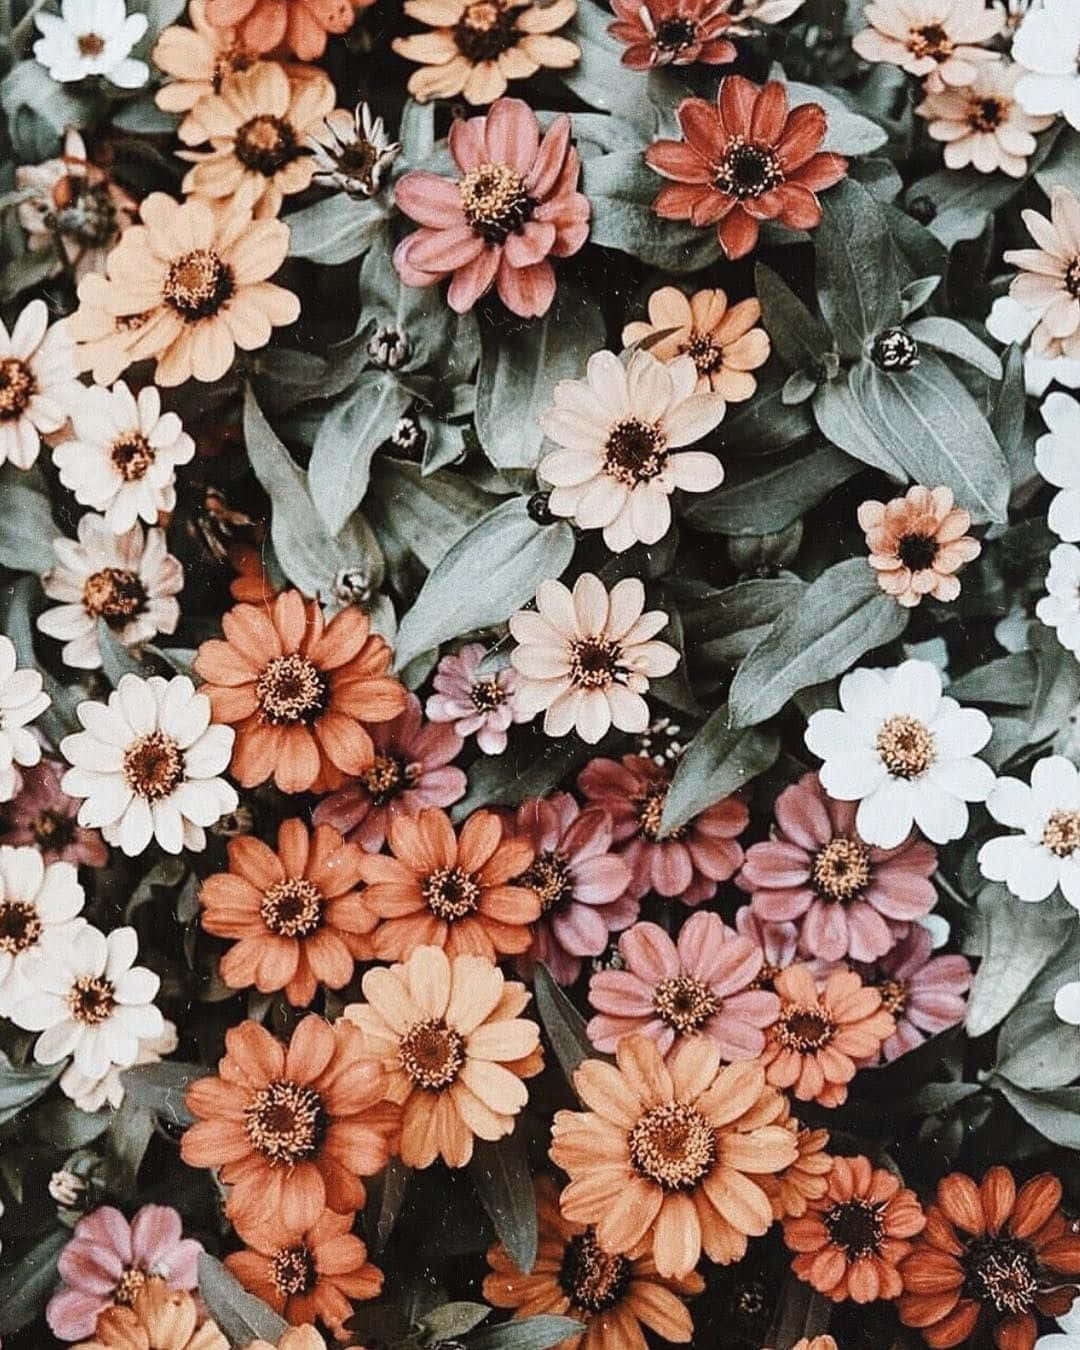 Ästhetischeblumen - Eine Vielfalt An Bunten Blüten Wallpaper